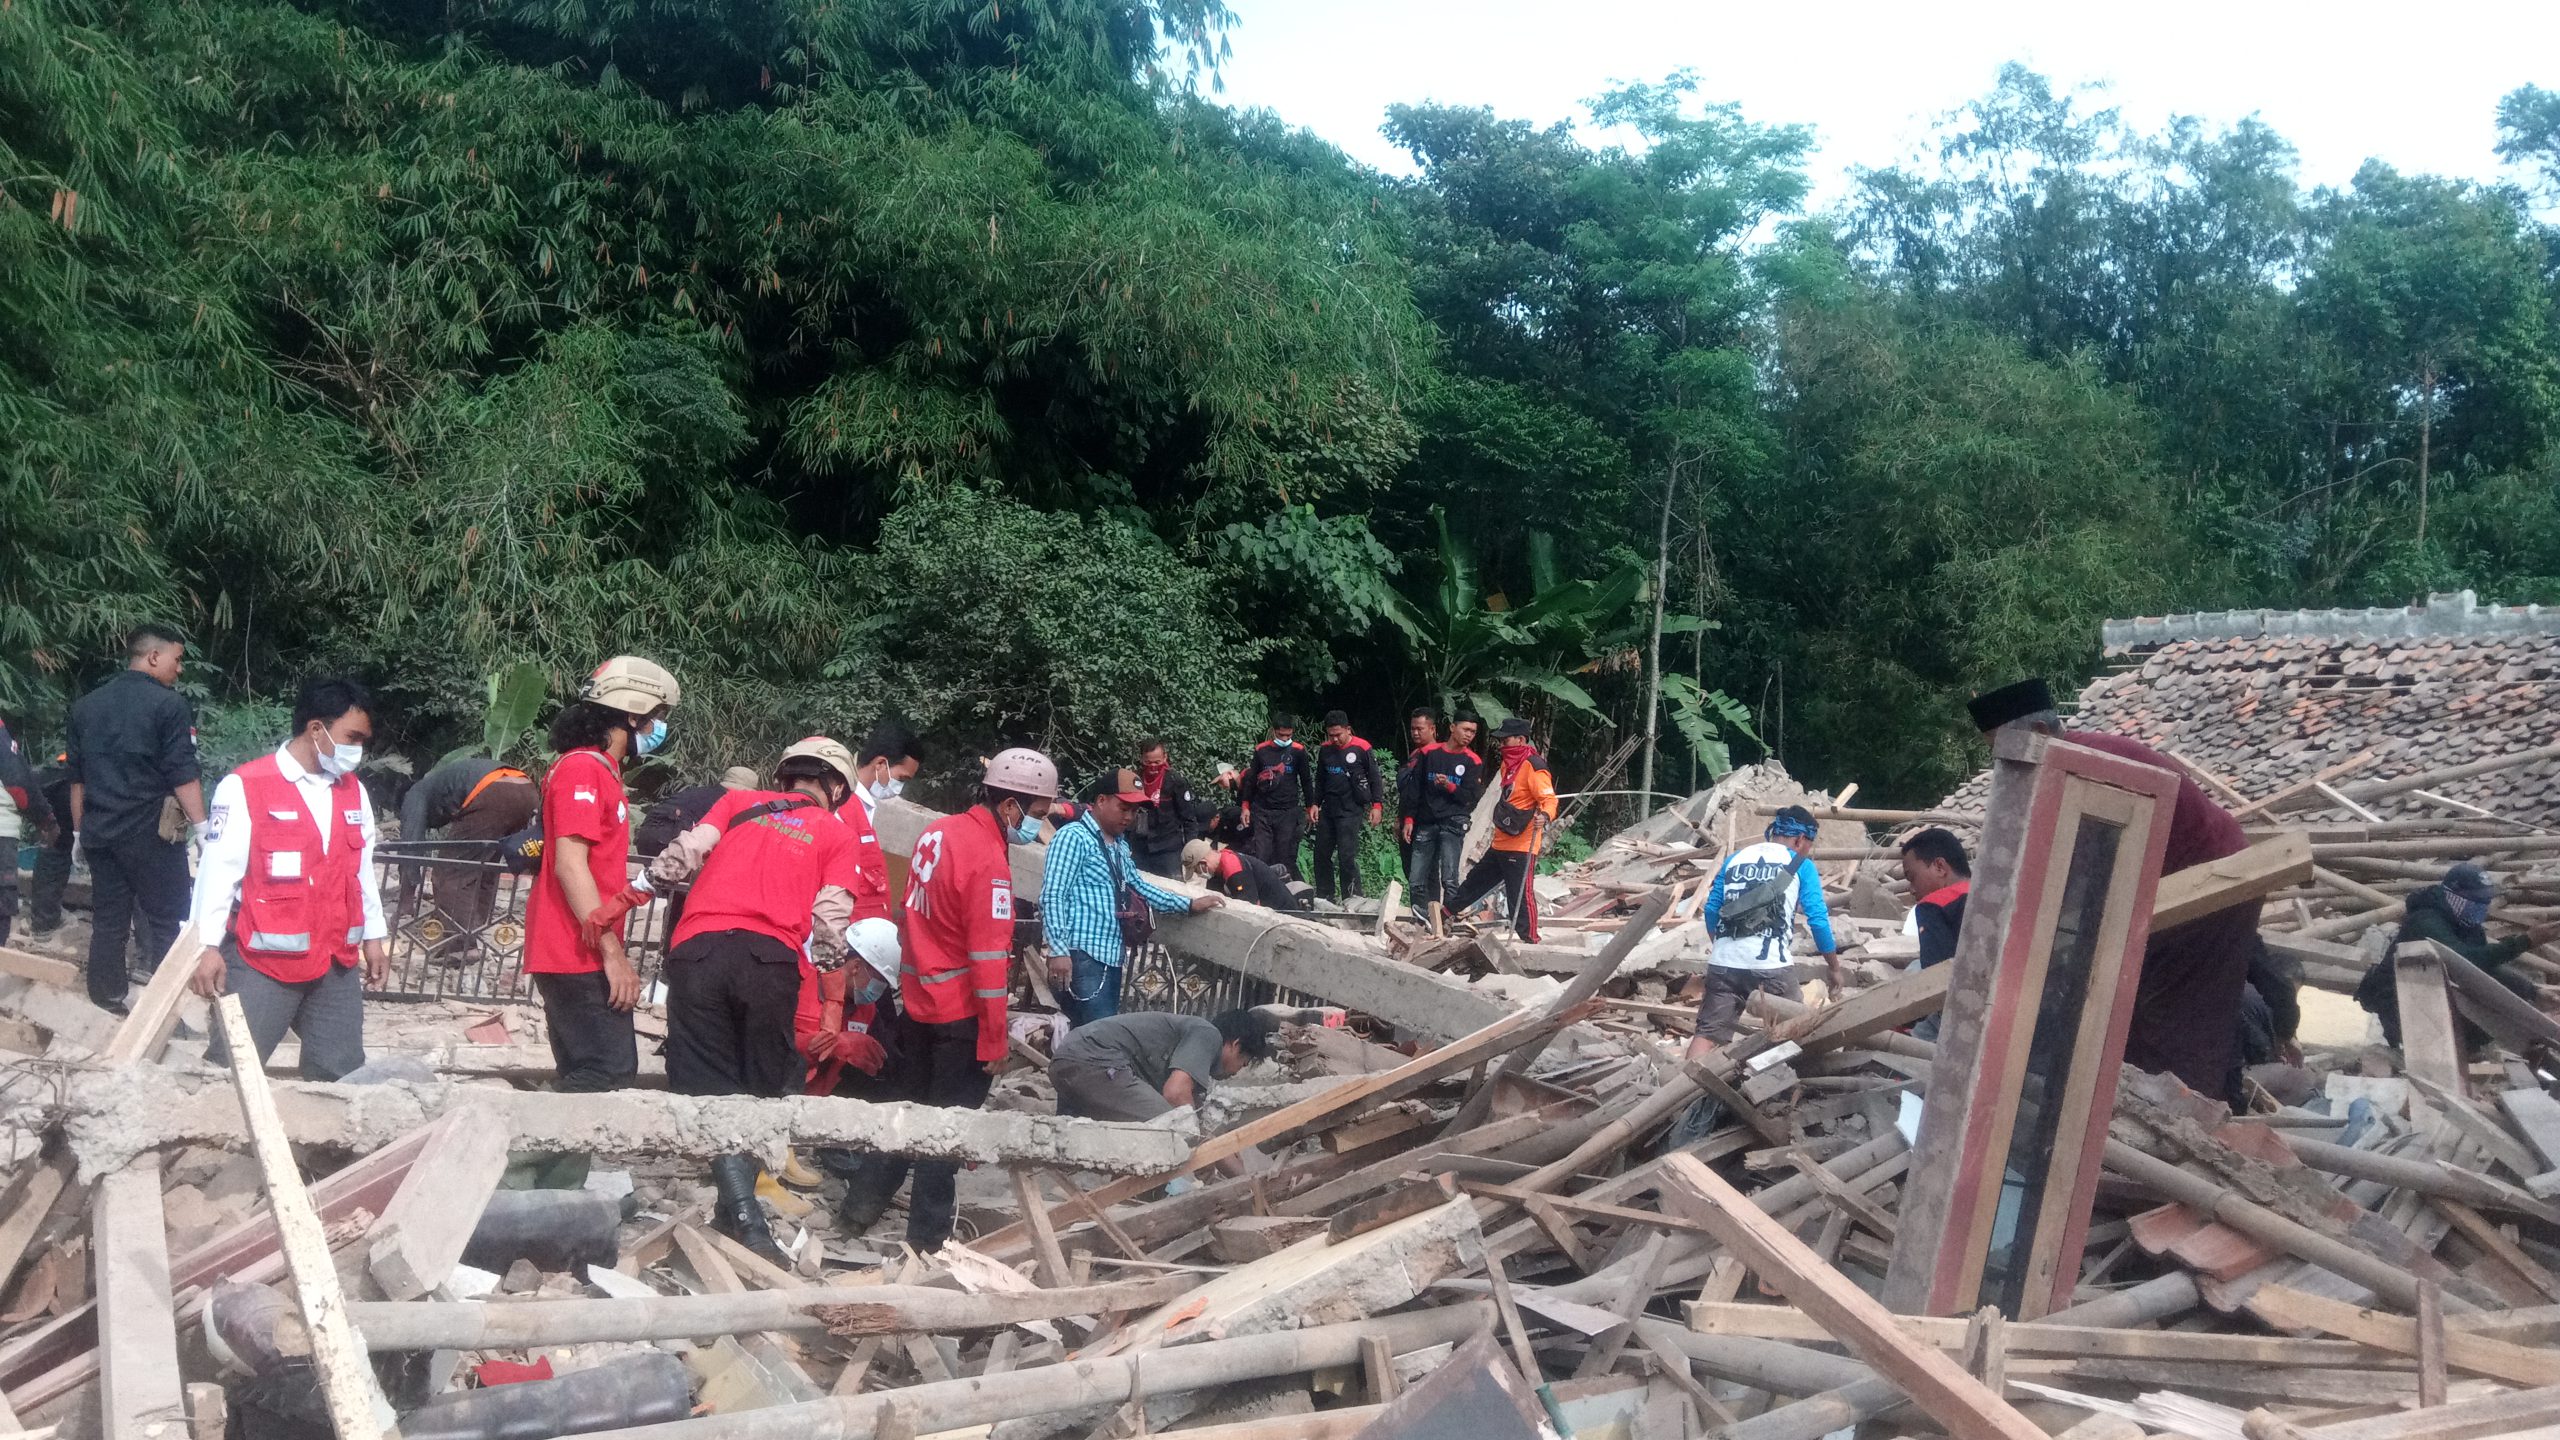 Gempa Cianjur: Anak Sembilan Tahun Tertimbun Reruntuhan Rumah, Ini Yang Dilakukan Garda Metal Bersama PMI dan Anggota DPR RI